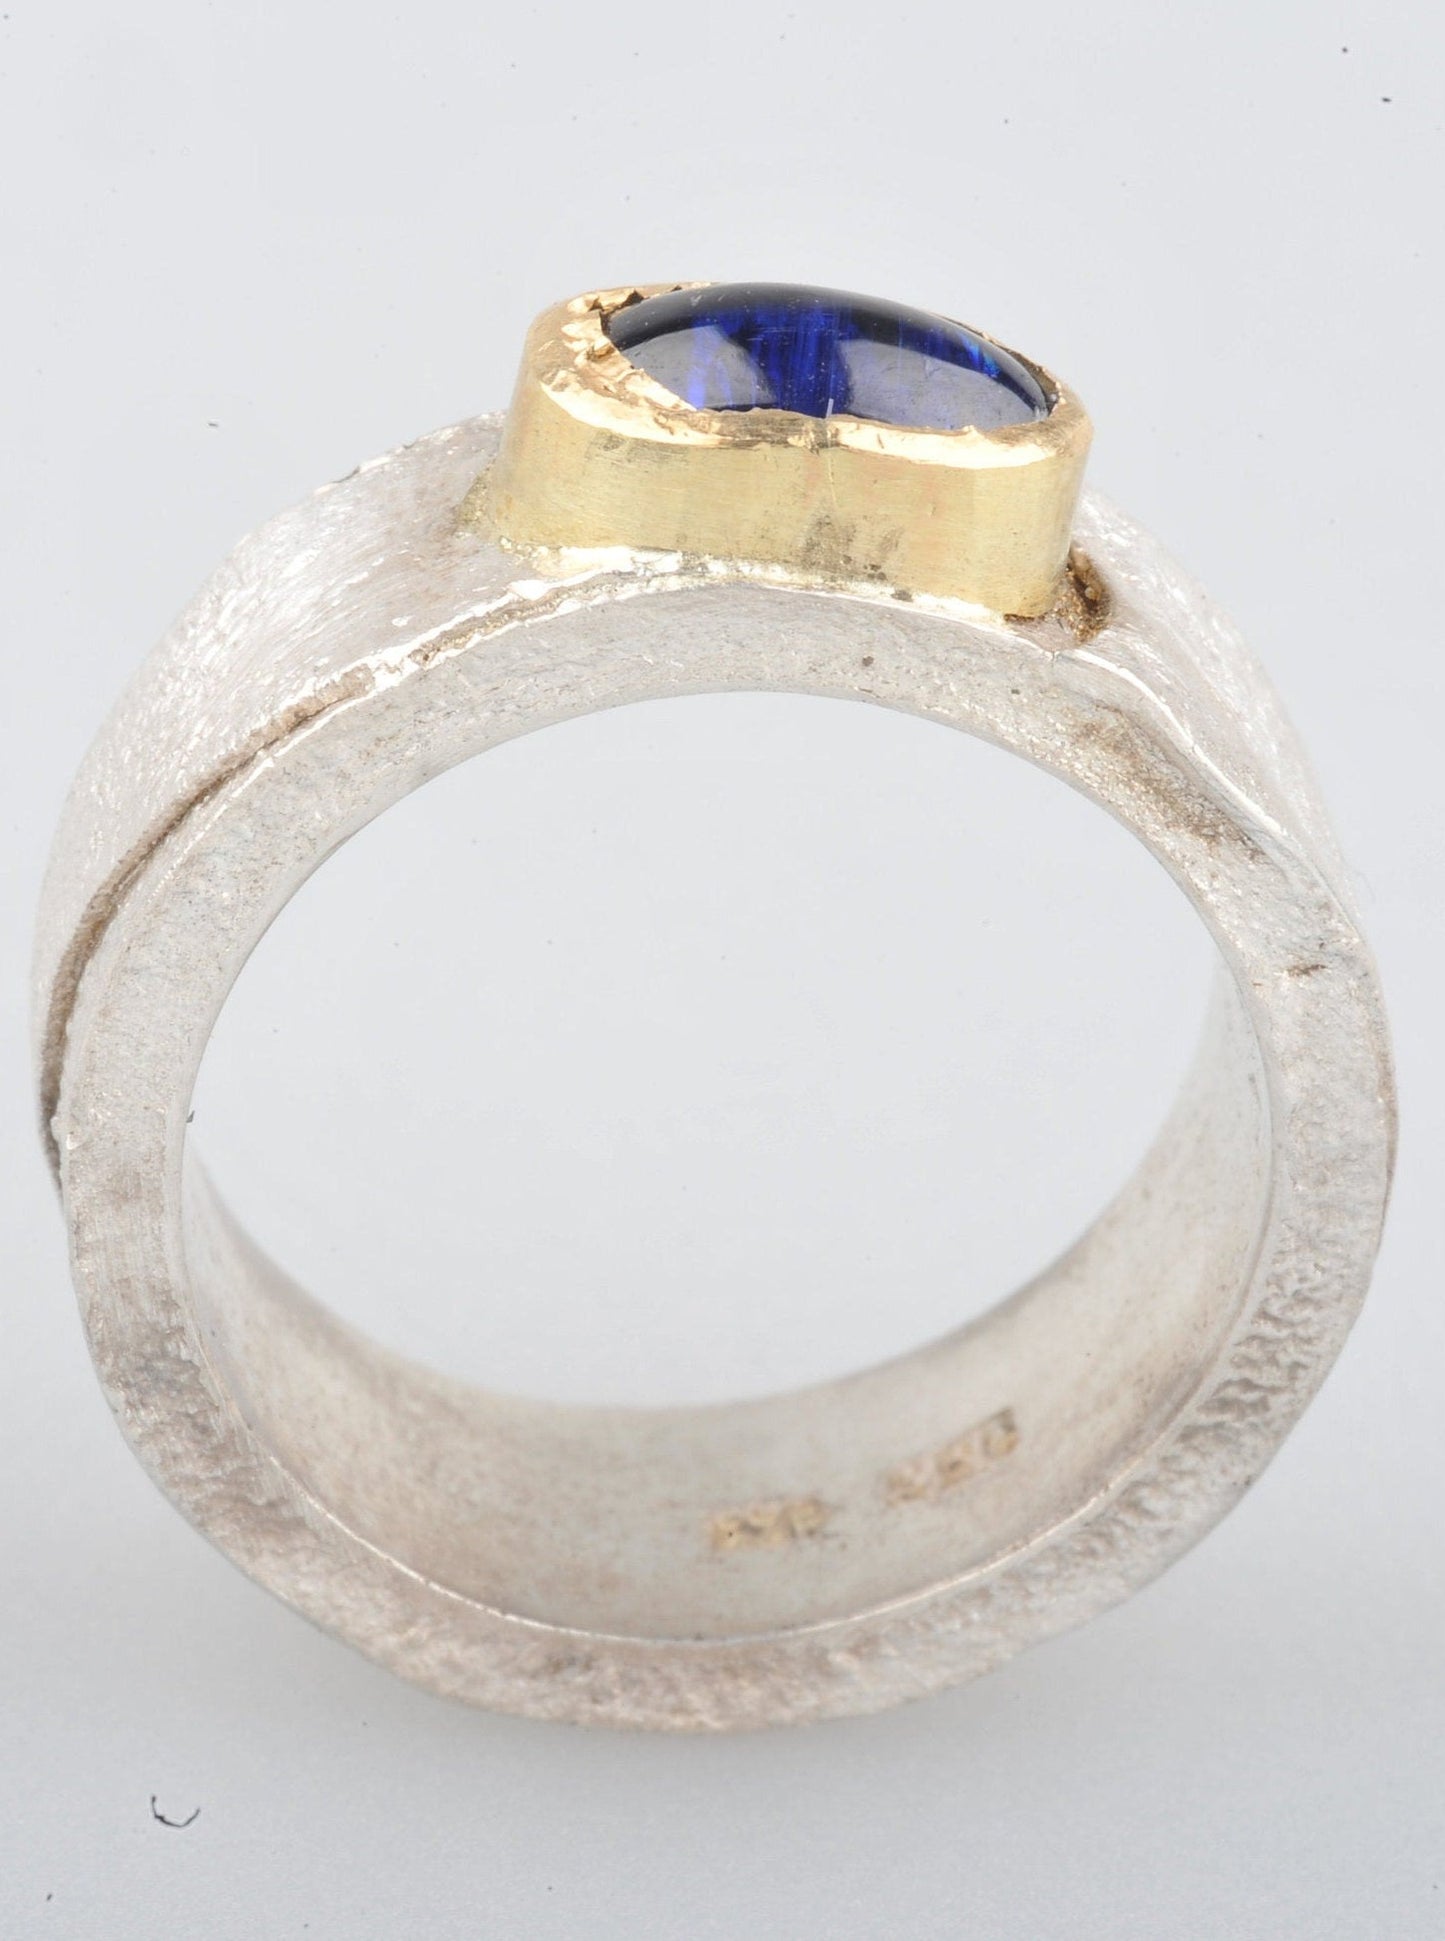 
                  
                    Dieser Ring hat ein schönes Gewicht. Das Band ist 8 mm breit und 2 mm dick. Die Oberfläche wurde retikuliert (ich bringe die Oberfläche des Silbers zum Schmelzpunkt und lasse sie abkühlen. Dies wird mehrmals wiederholt, bis ich mit der Oberflächenstruktur zufrieden bin), während die Innenseite des Bandes glatt und poliert ist. Der Cyanit hat ein wunderschönes tiefes Blau.
                  
                